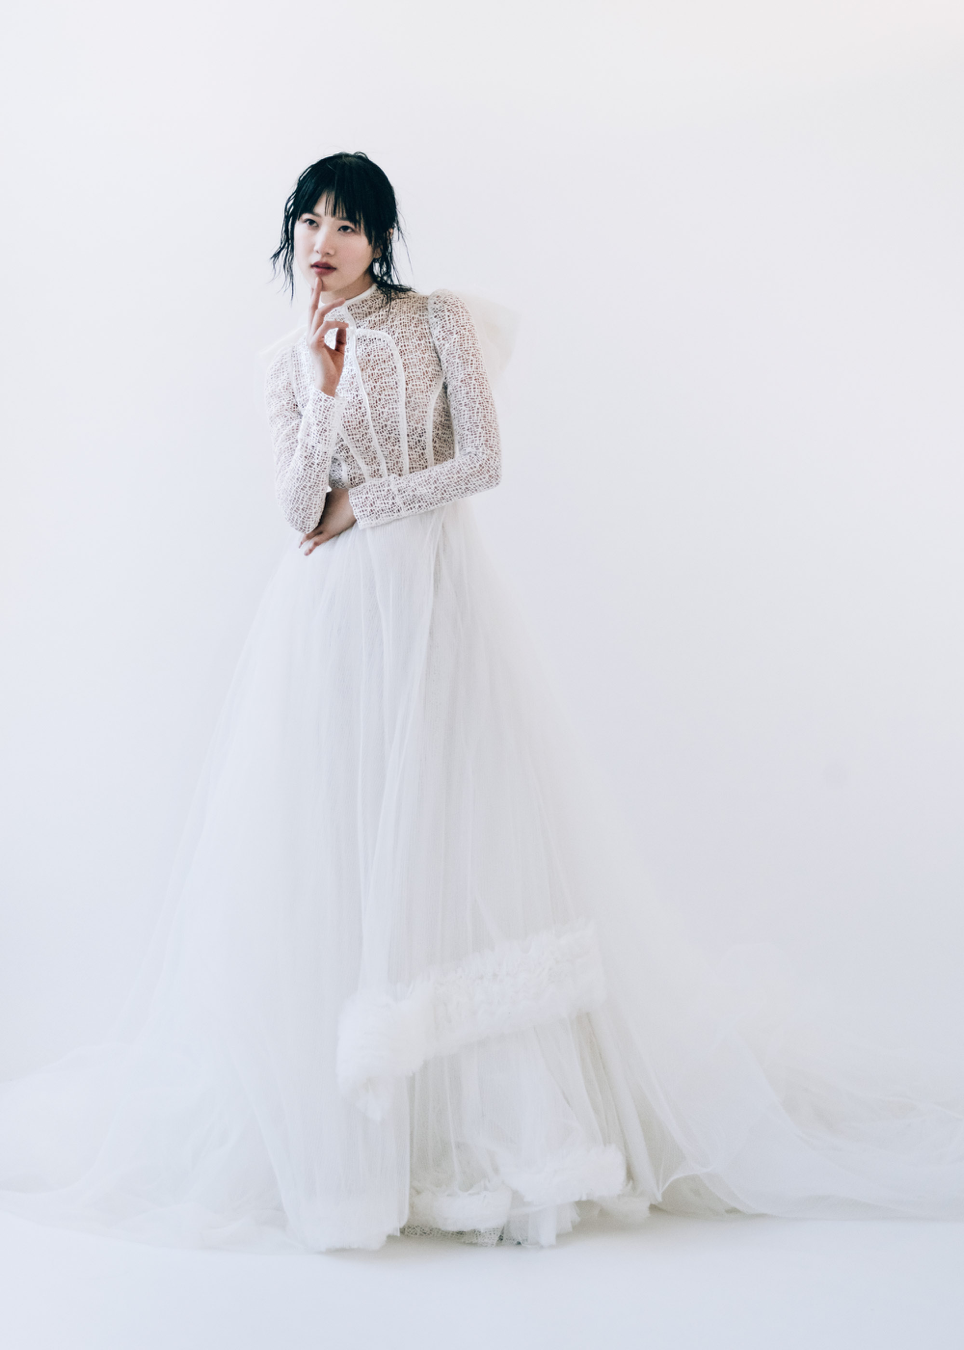 NTK Phương My lần đầu trình diễn ở New York Fashion Week Bridal 2019